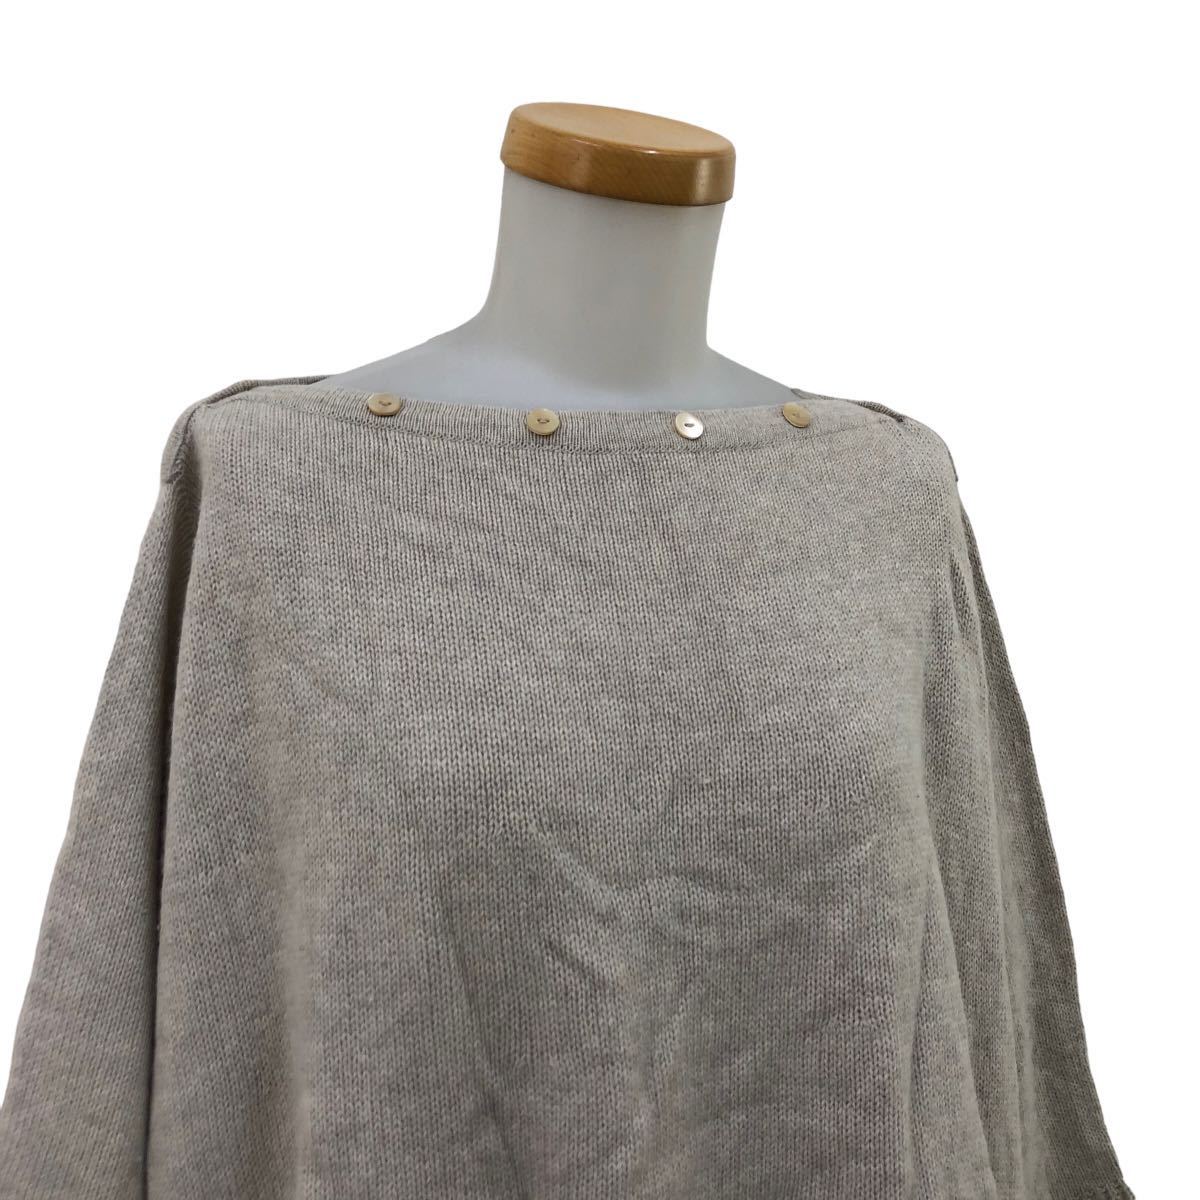 NB193 ADIEU TRISTESSE Adieu Tristesse вязаный свитер свободно дизайн тянуть over tops серый ju серия полный размер справка сделано в Японии 